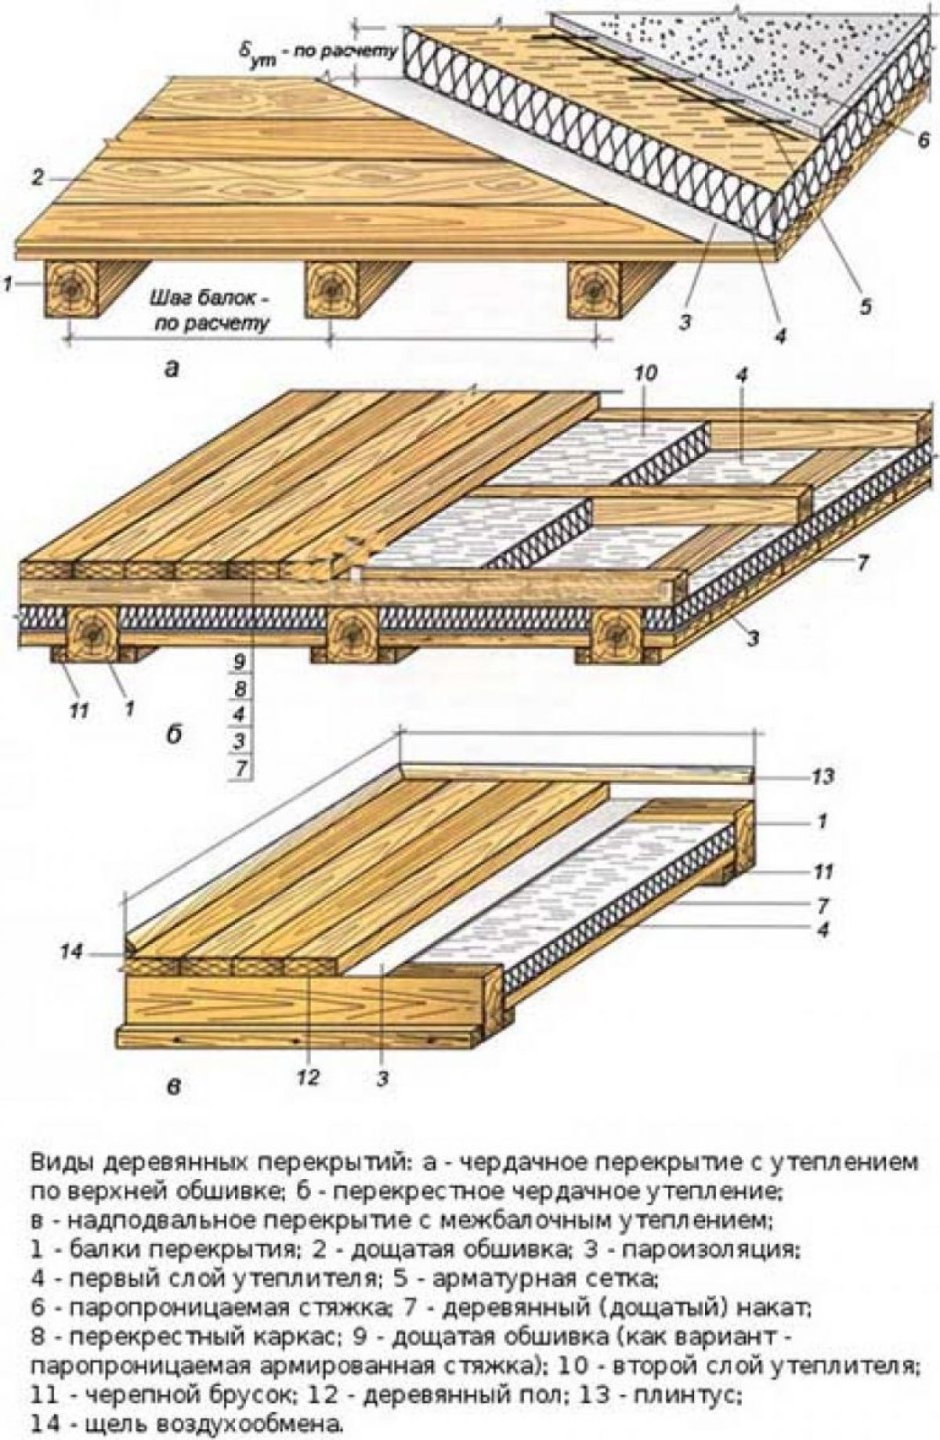 Конструкция междуэтажного перекрытия по деревянным балкам